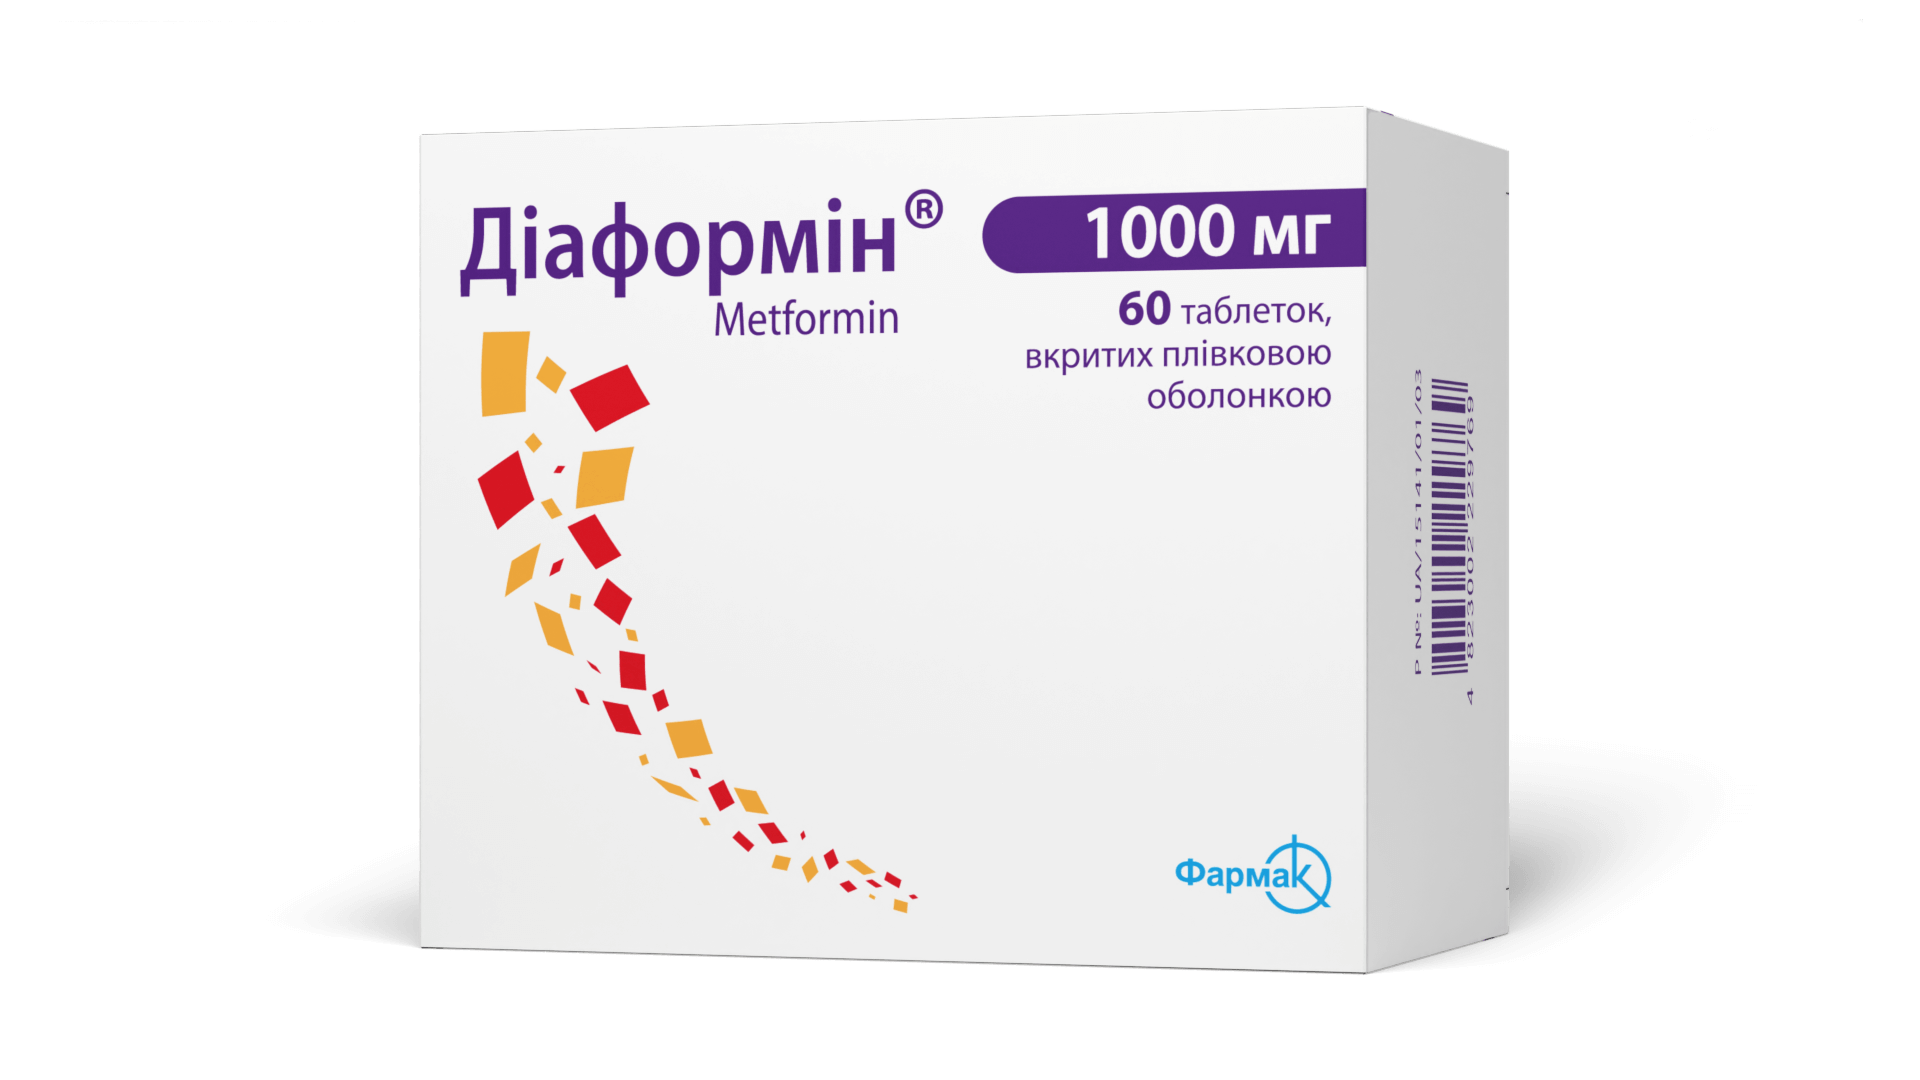 Діаформін® 1000 мг (3)